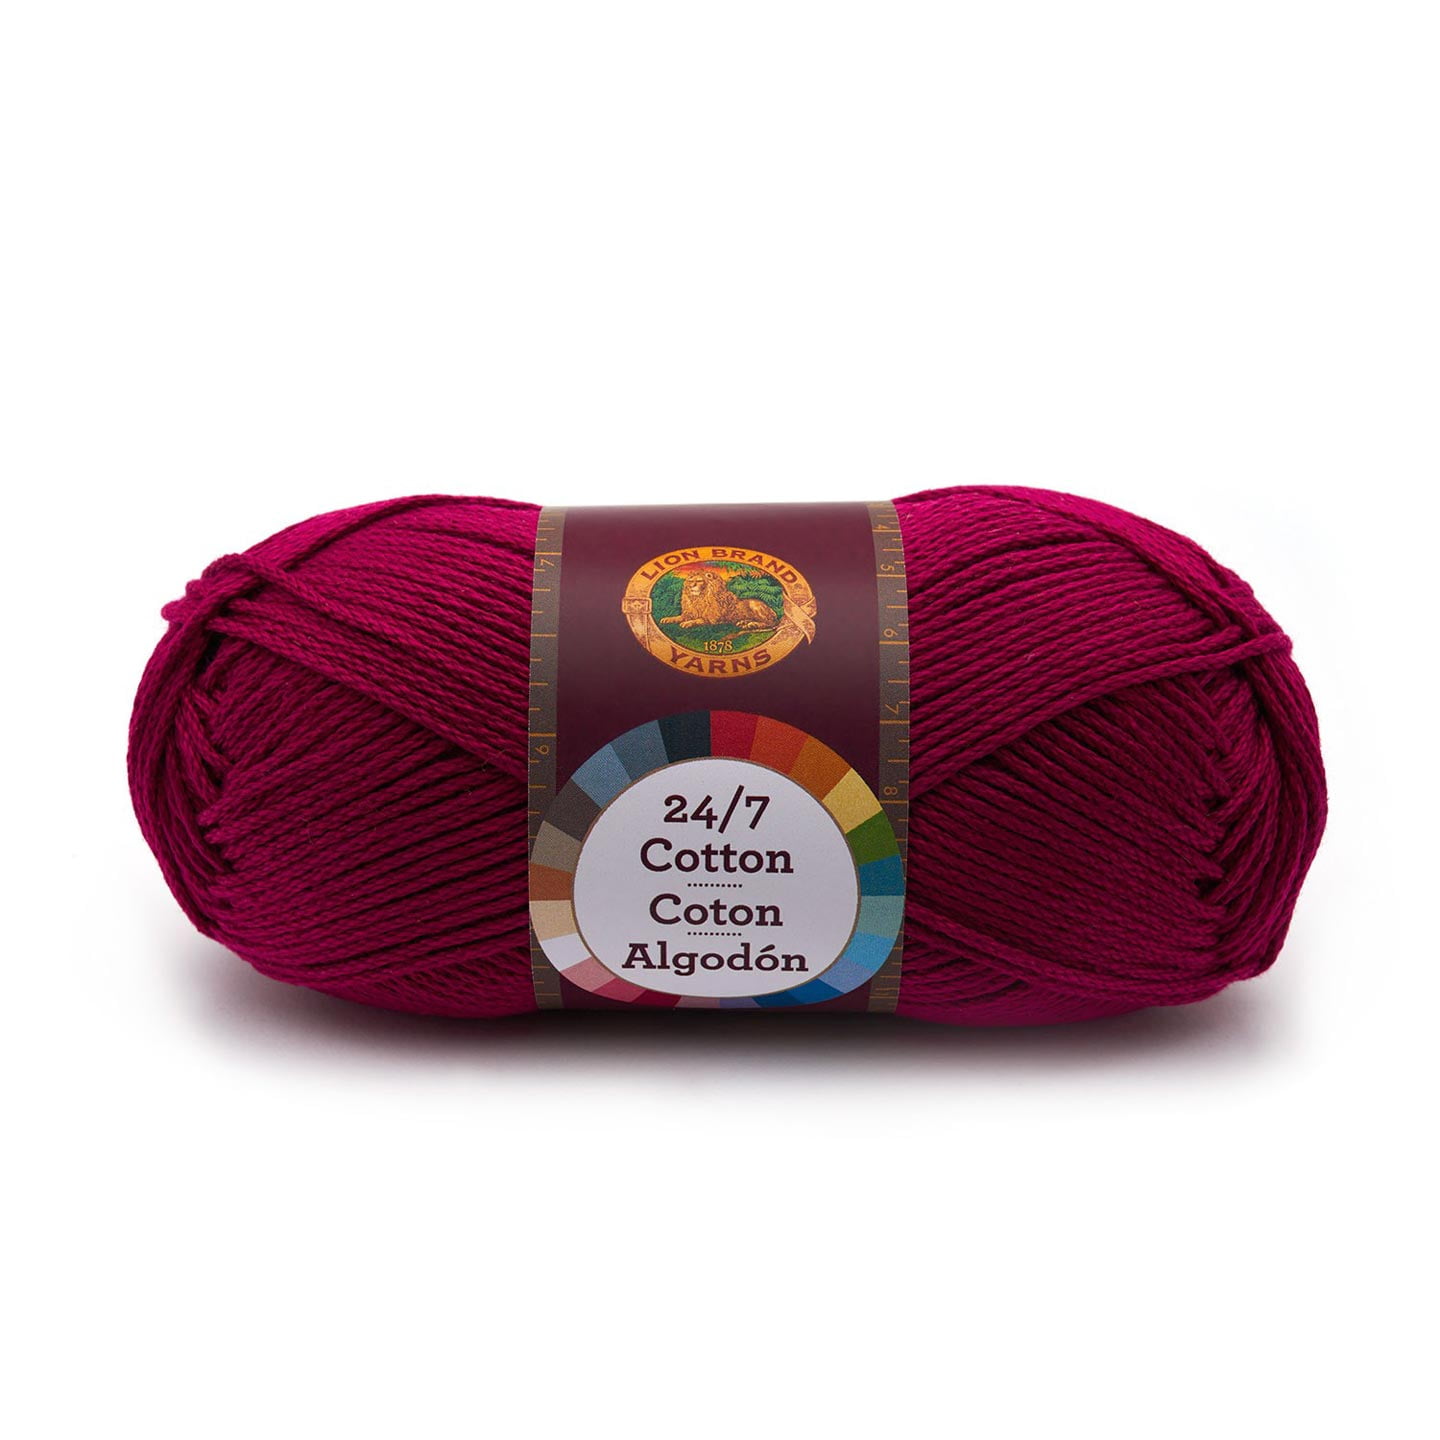 24/7 Cotton® Yarn  Yarn, Cotton yarn, Lion brand yarn